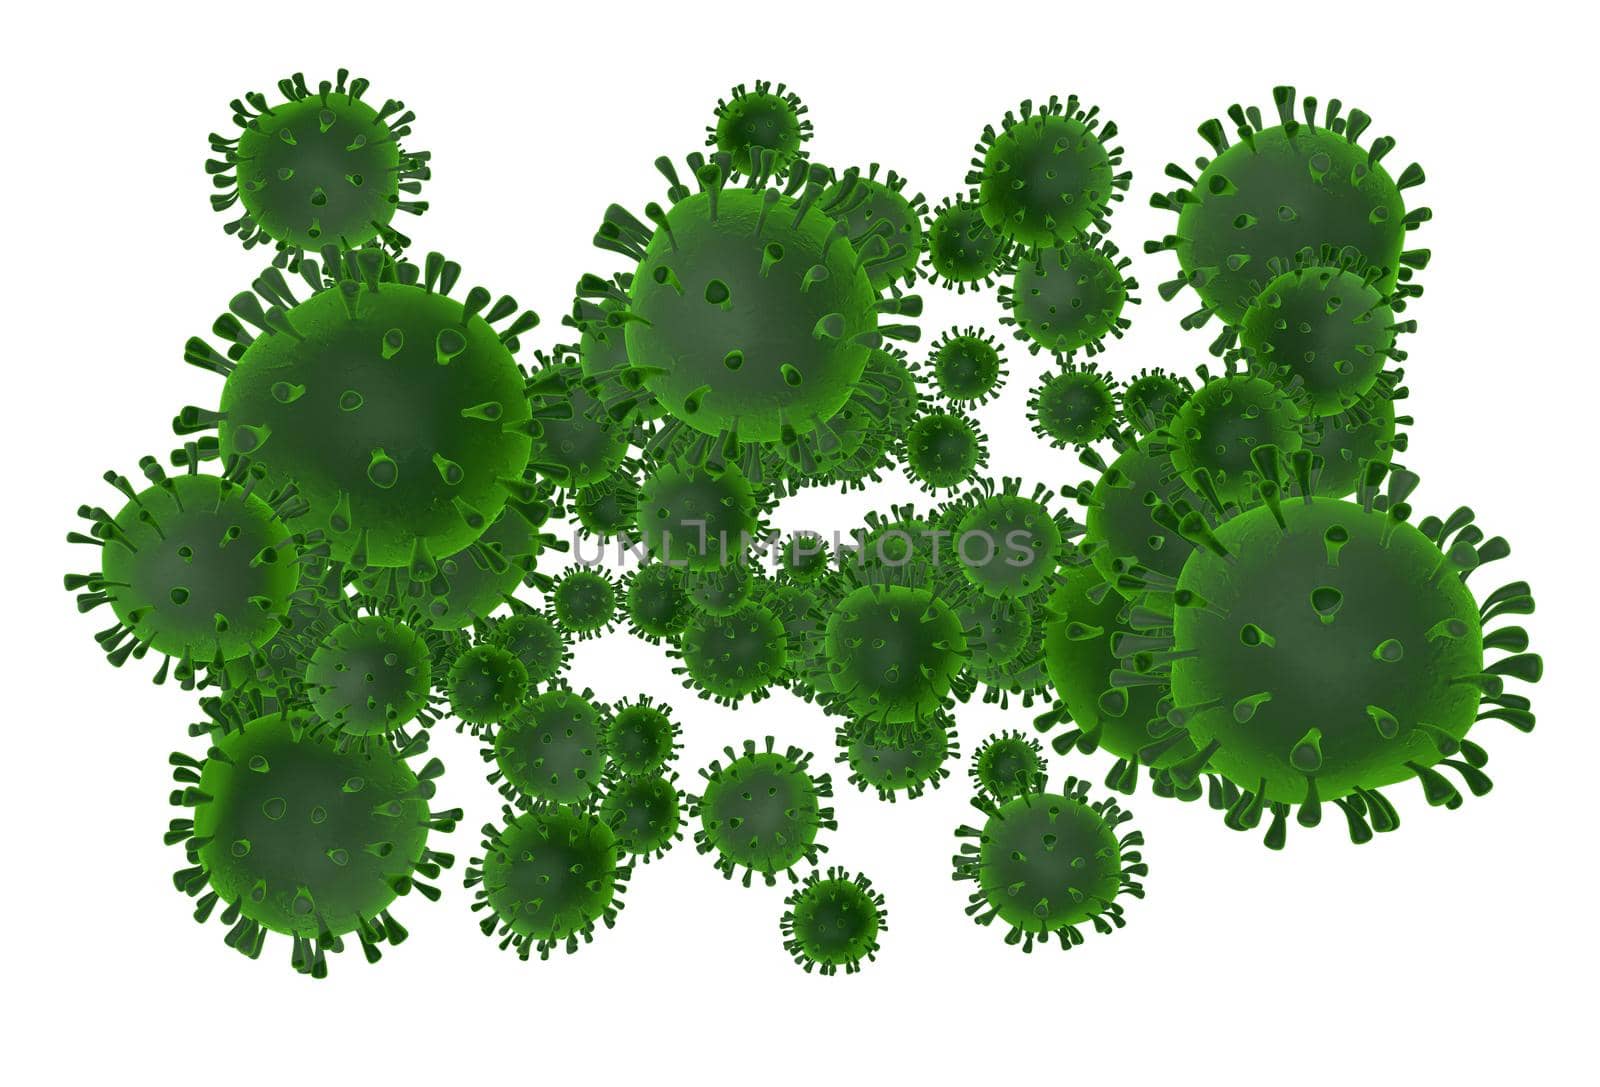 Cluster of dangerous viruses - 3D illustration